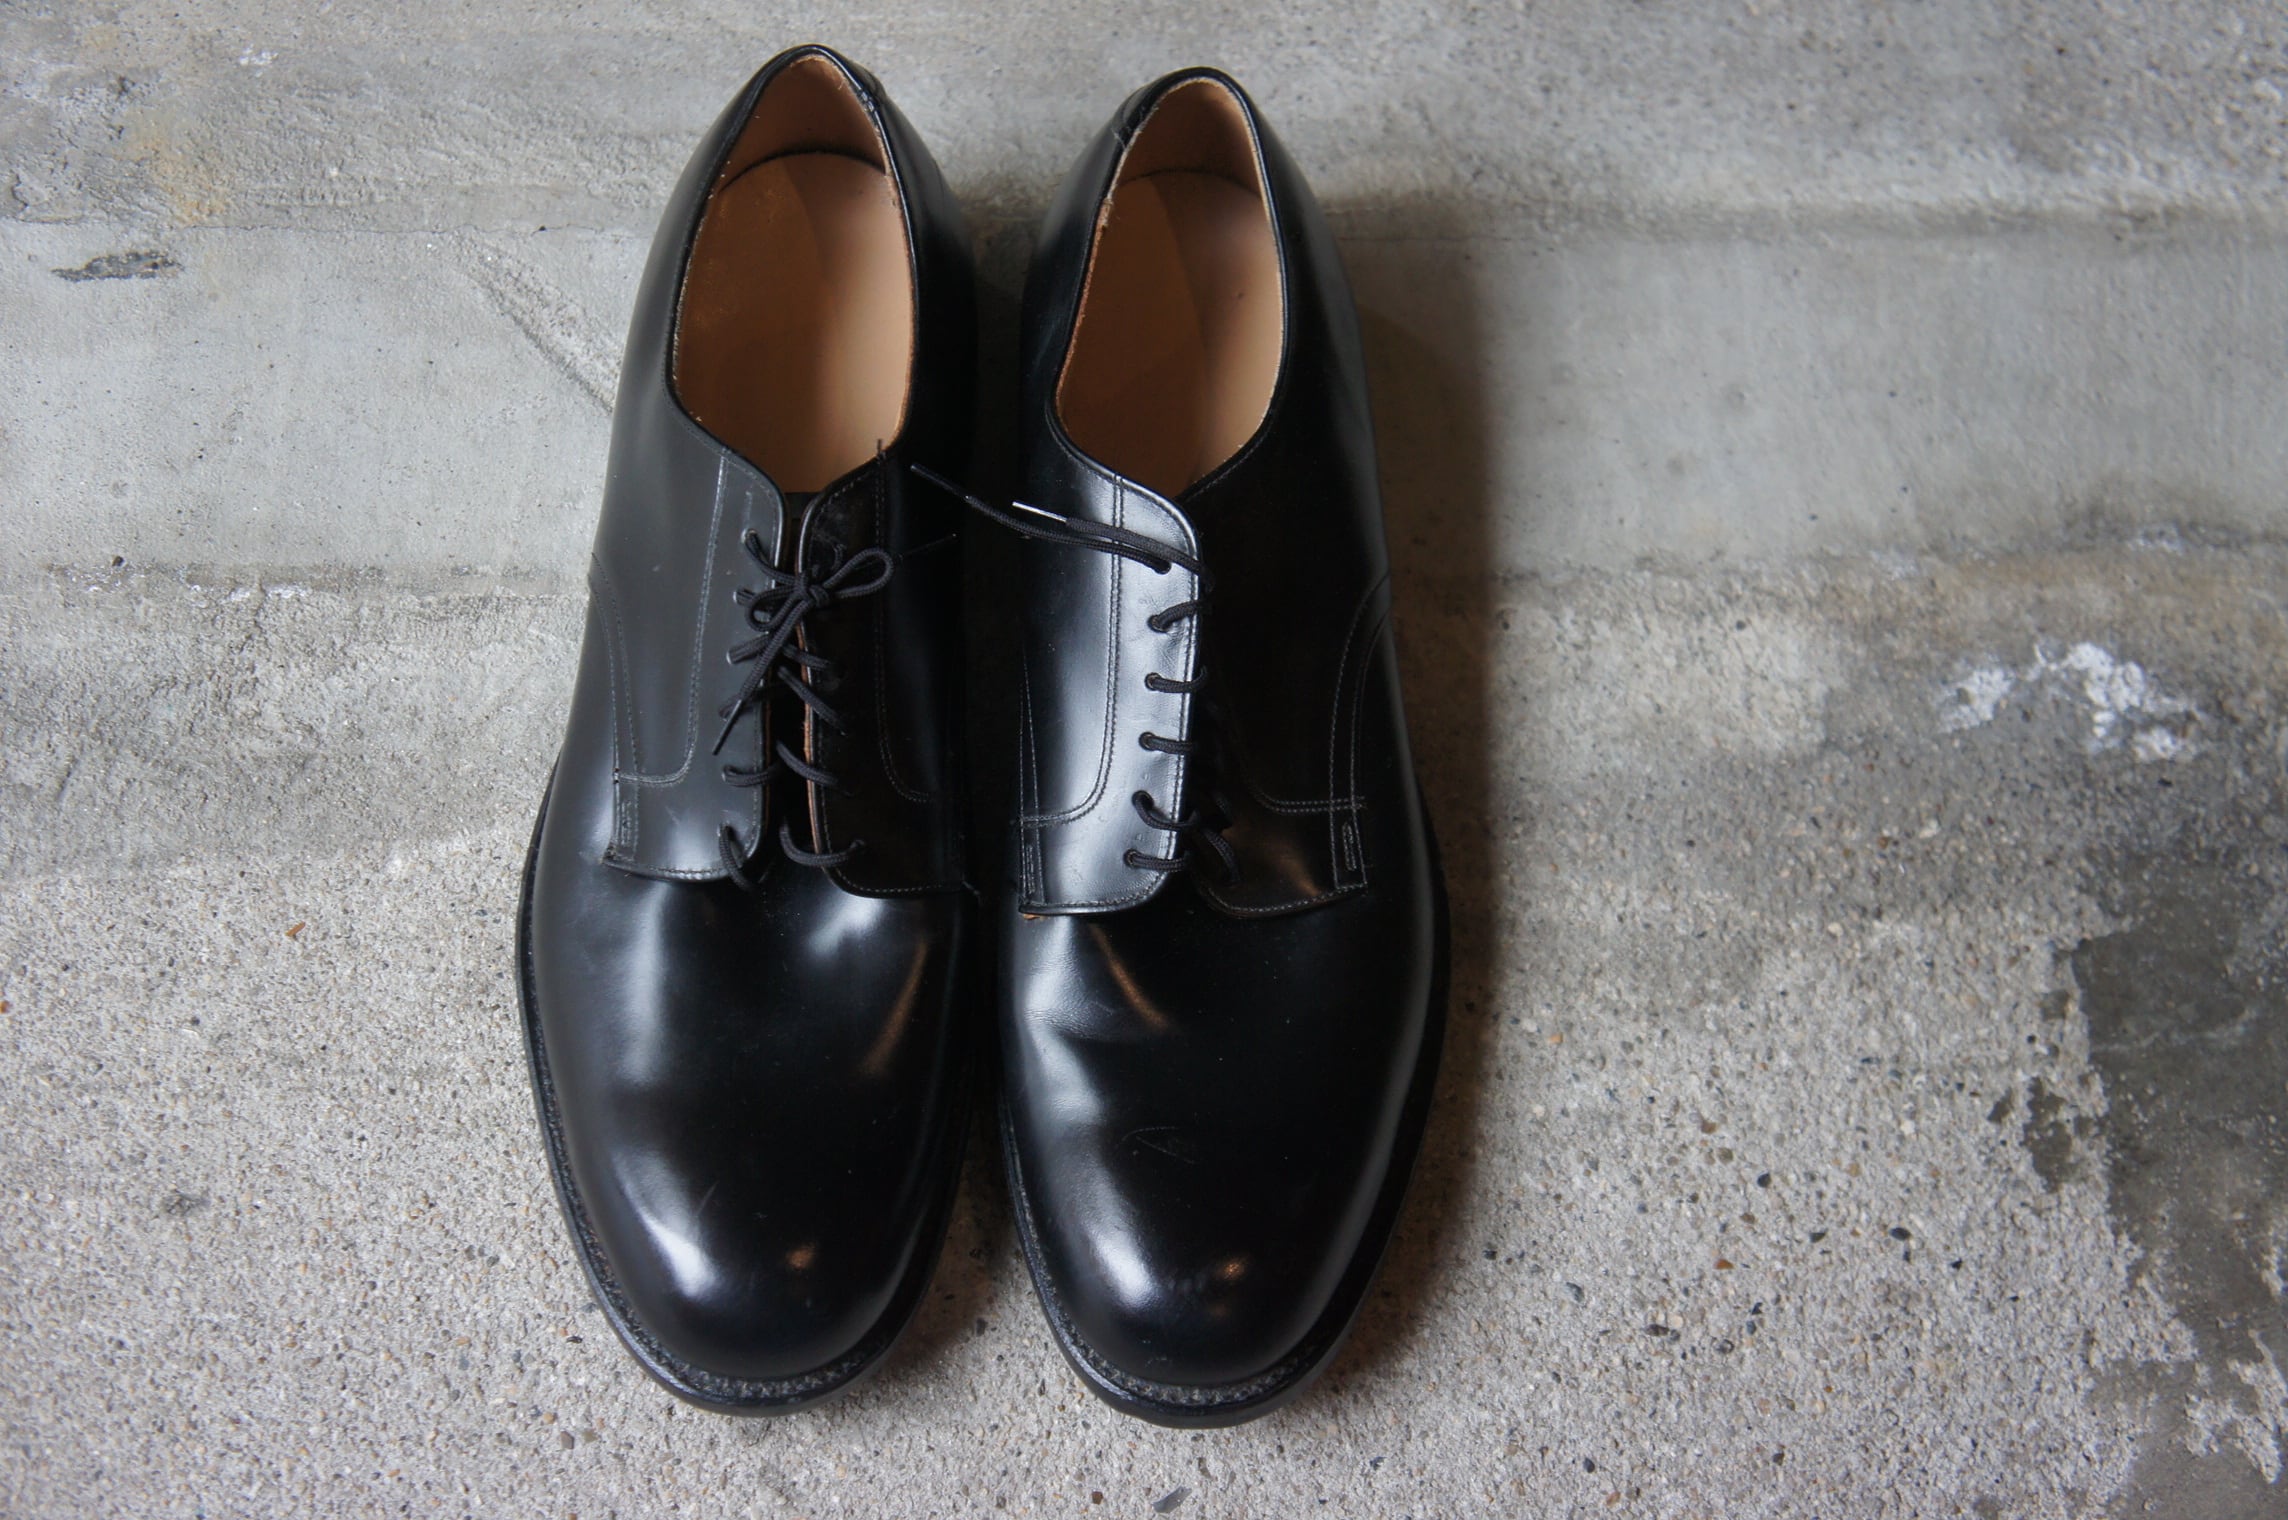 NOS 70s service shoes by D.J.LEAVENWORTH